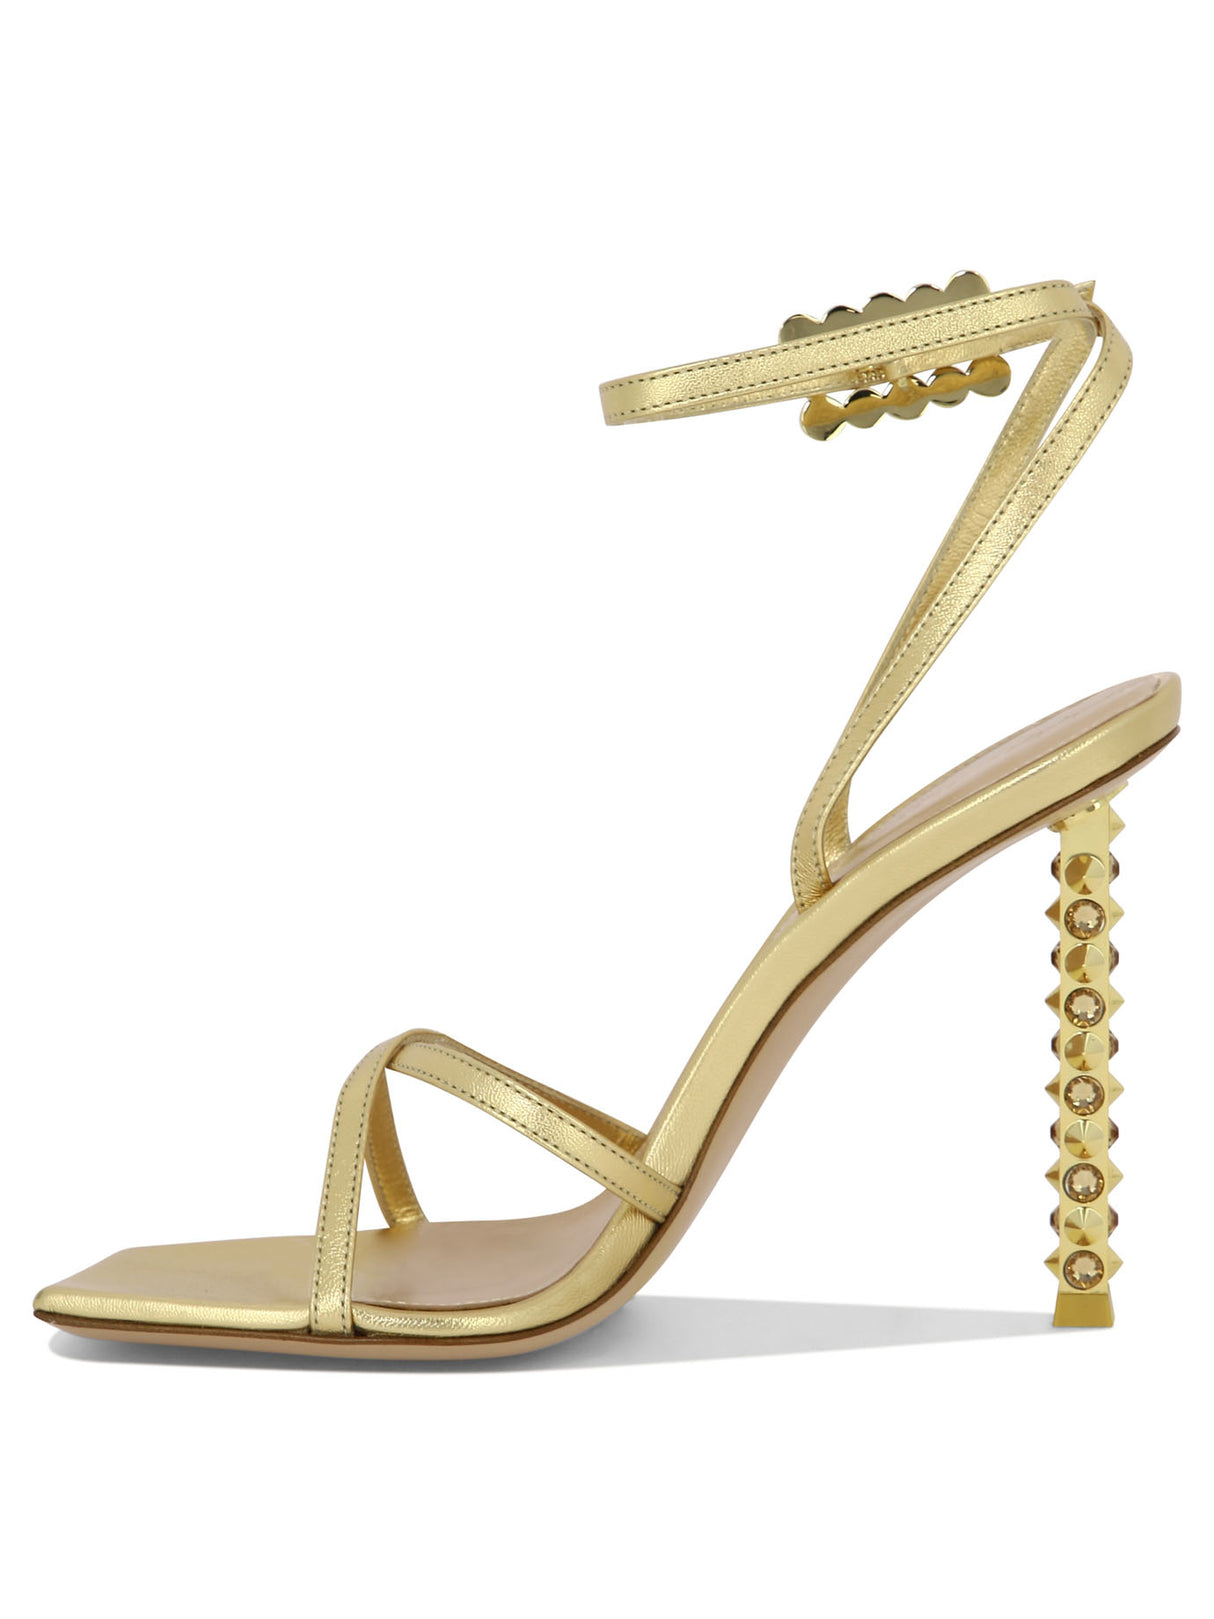 纯金水晶和铆钉装饰的女士交叉凉鞋